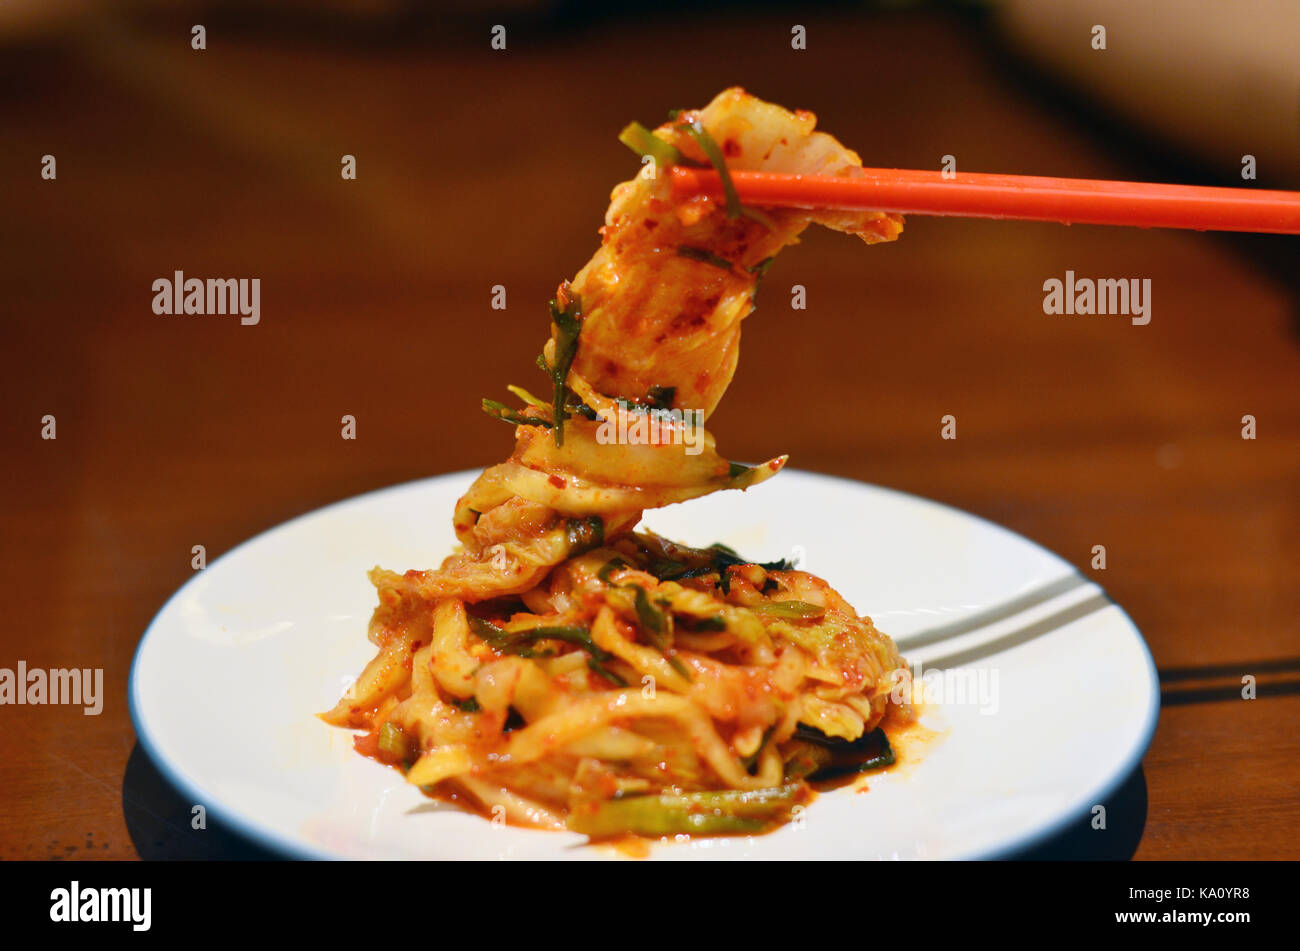 Le kimchi est un plat traditionnel à base de légumes fermentés et salé, le plus souvent le chou napa et radis coréen Banque D'Images